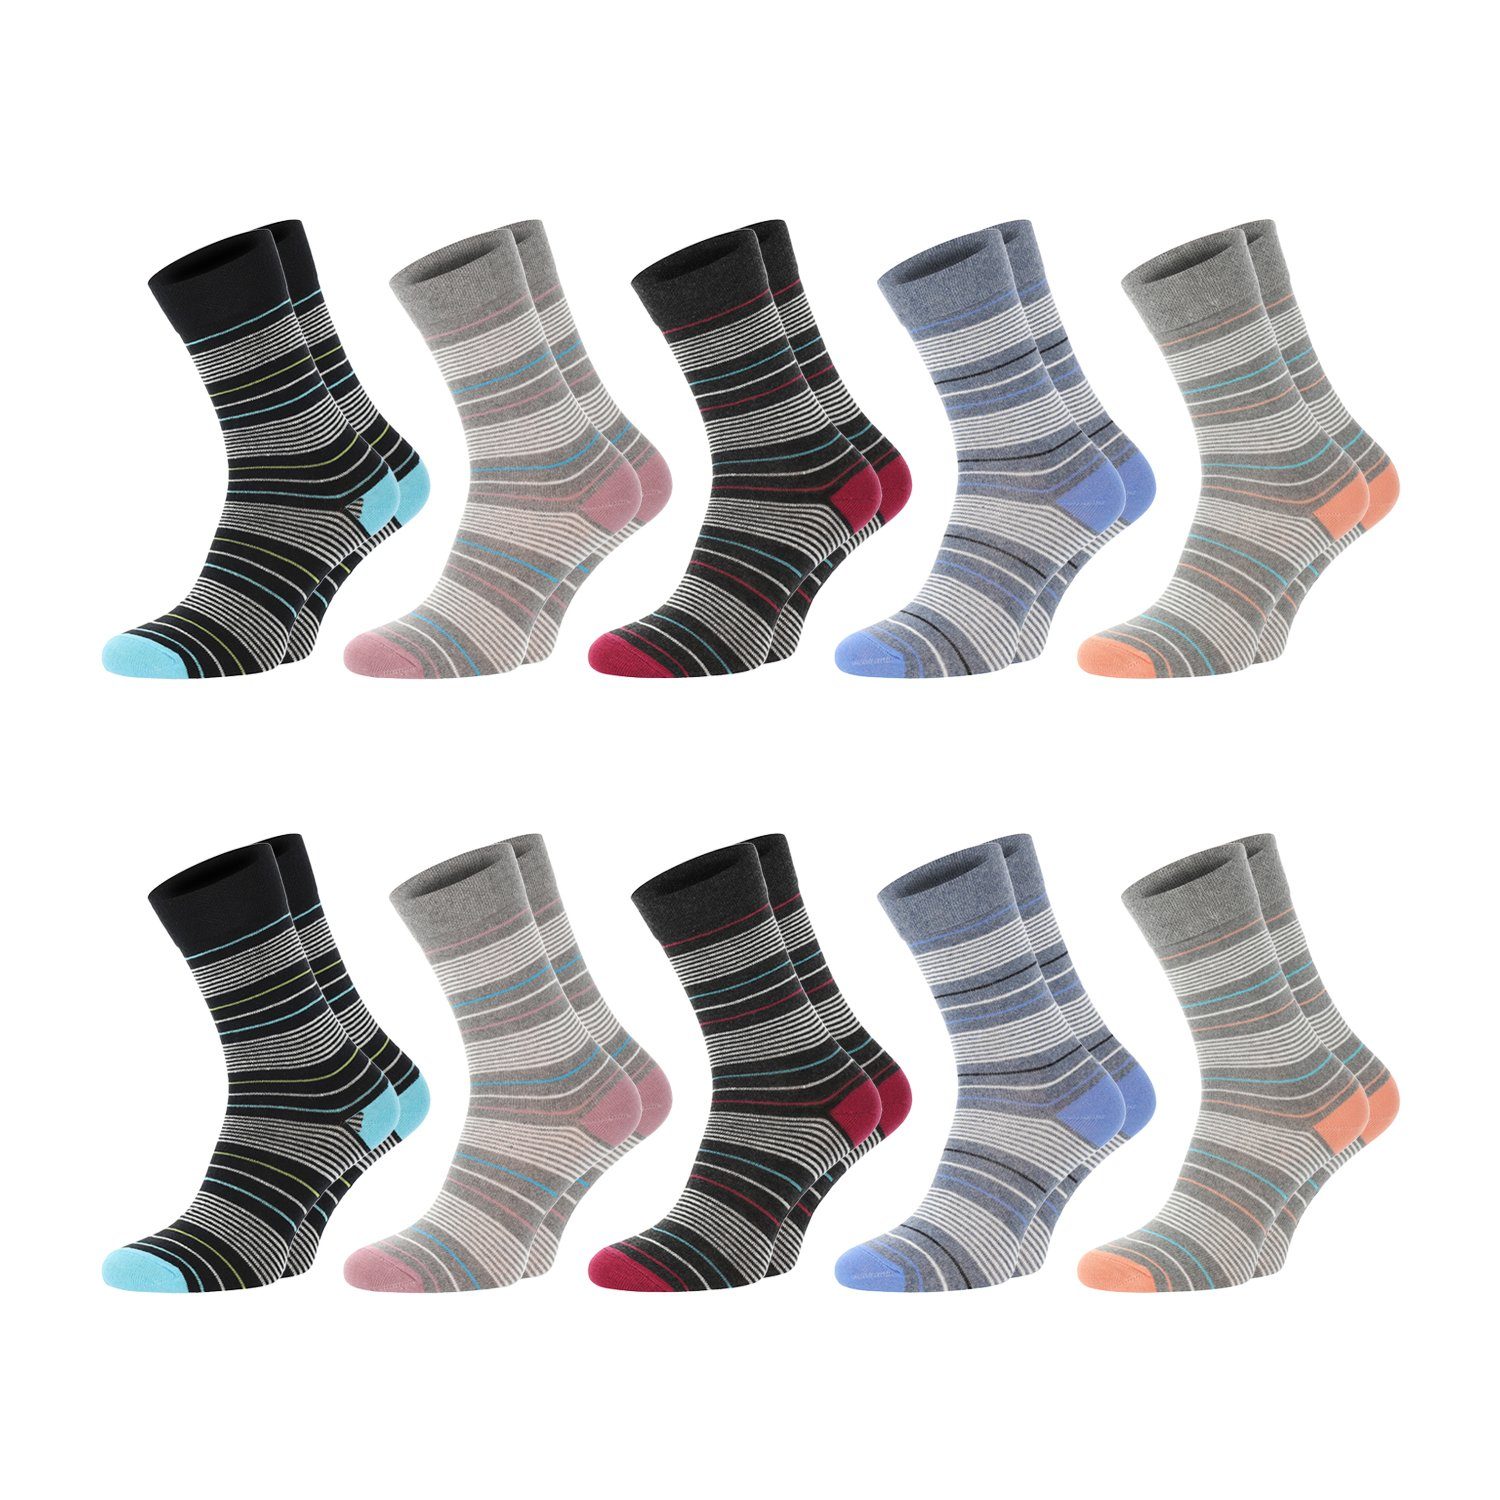 Chili Lifestyle Strümpfe Socken Streifen Design, 10 Paar, Damen, Baumwolle, Schwarz, Blau, Grau